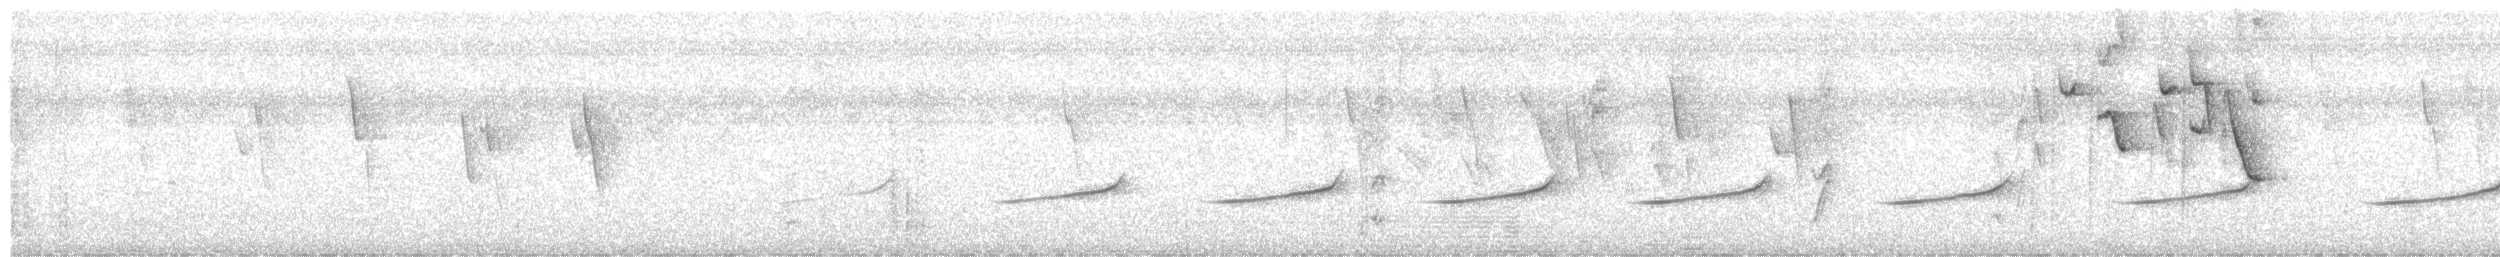 Ak Karınlı Tohumcul - ML614383617